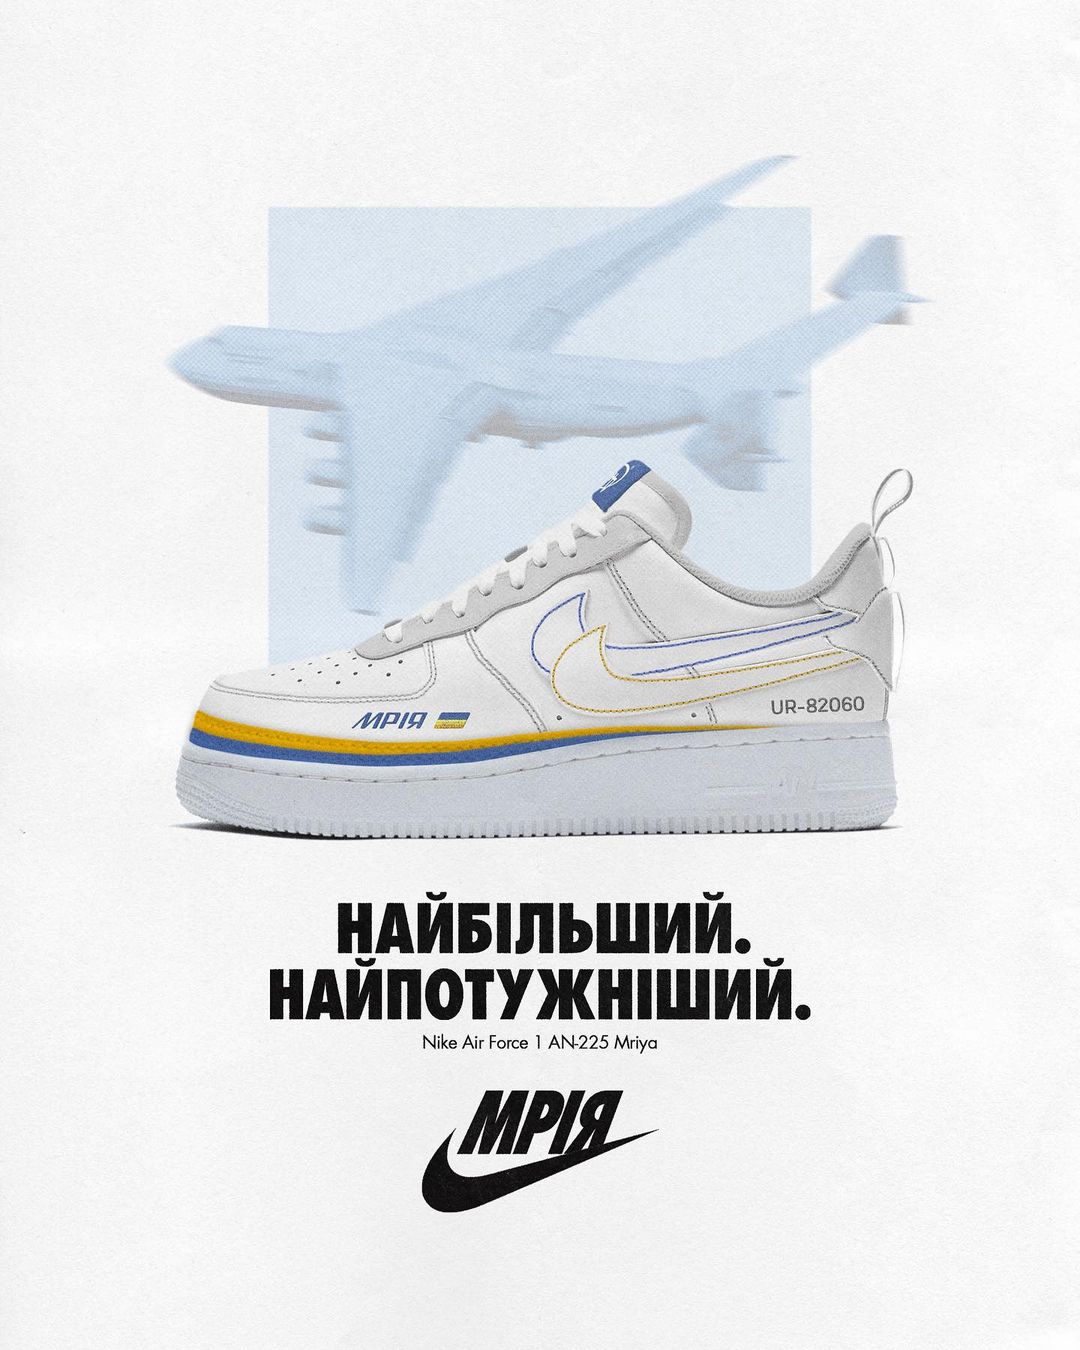 Український дизайнер вигадав кросівки Nike з літаком "Мрія"